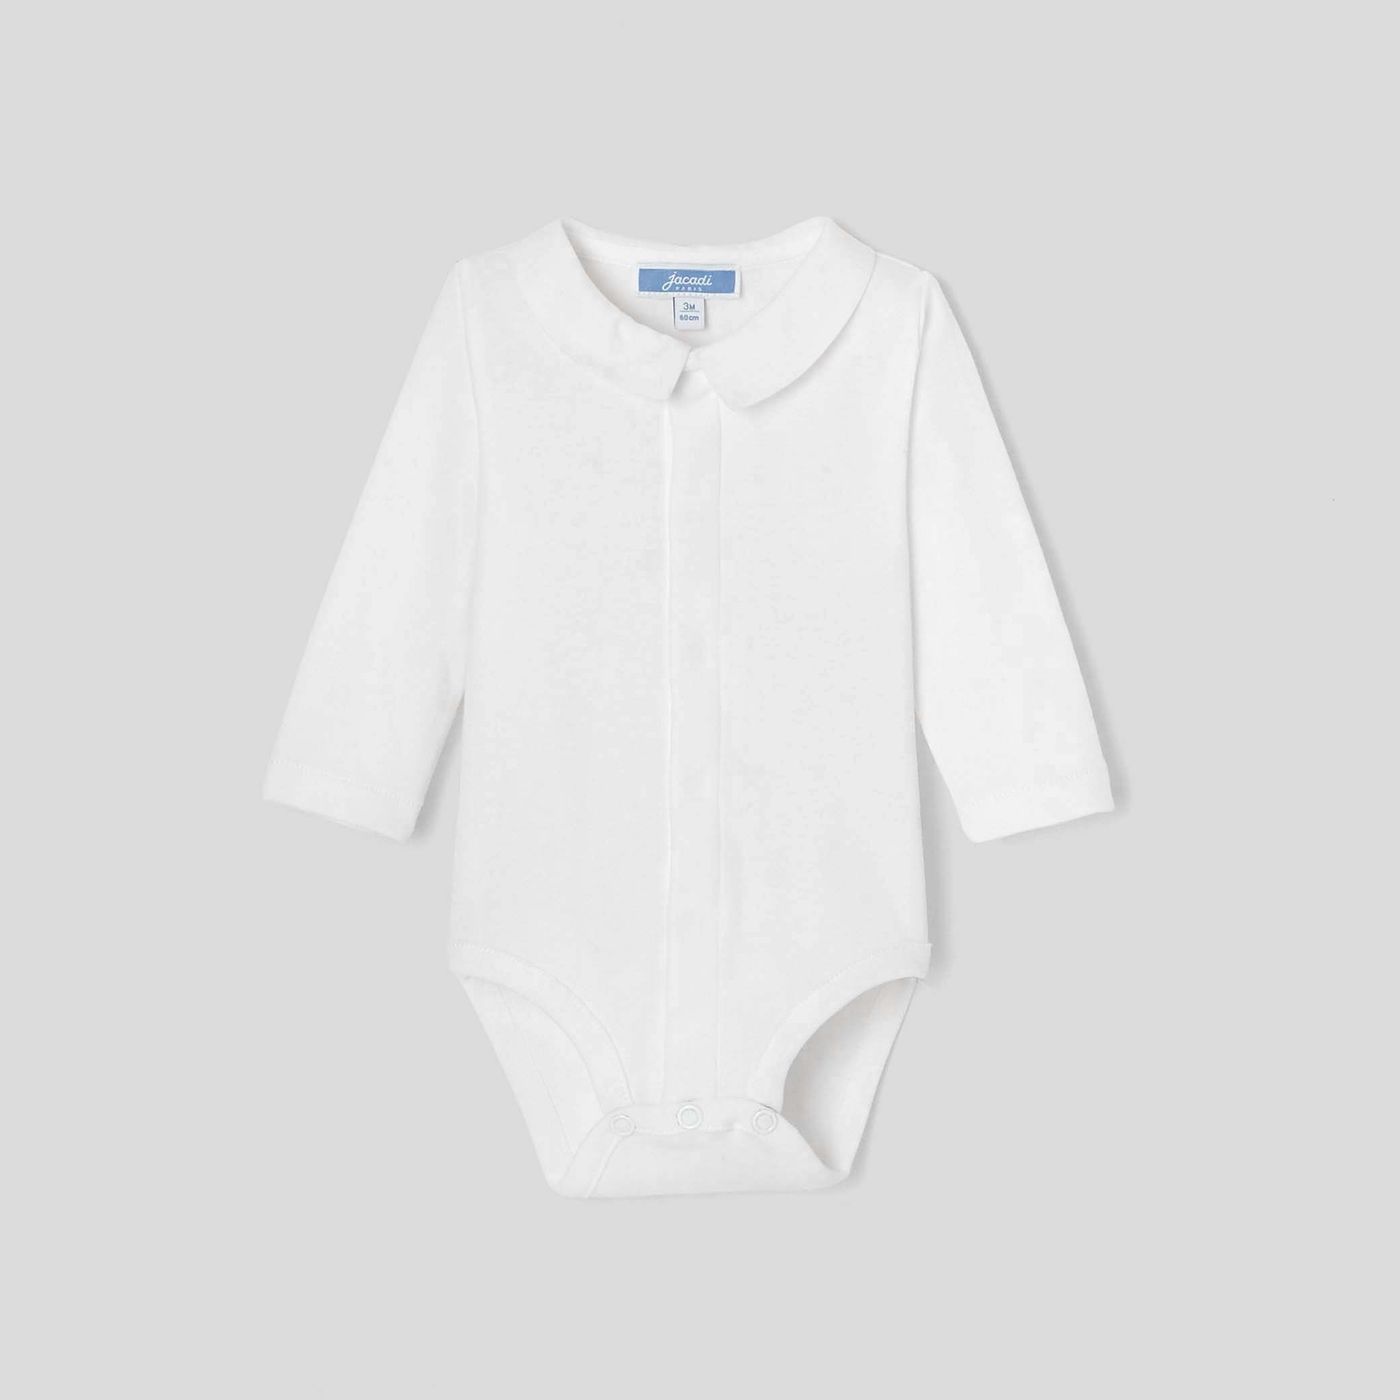 Baby boy long sleeves bodysuit - Jacadi | Jacadi (US)